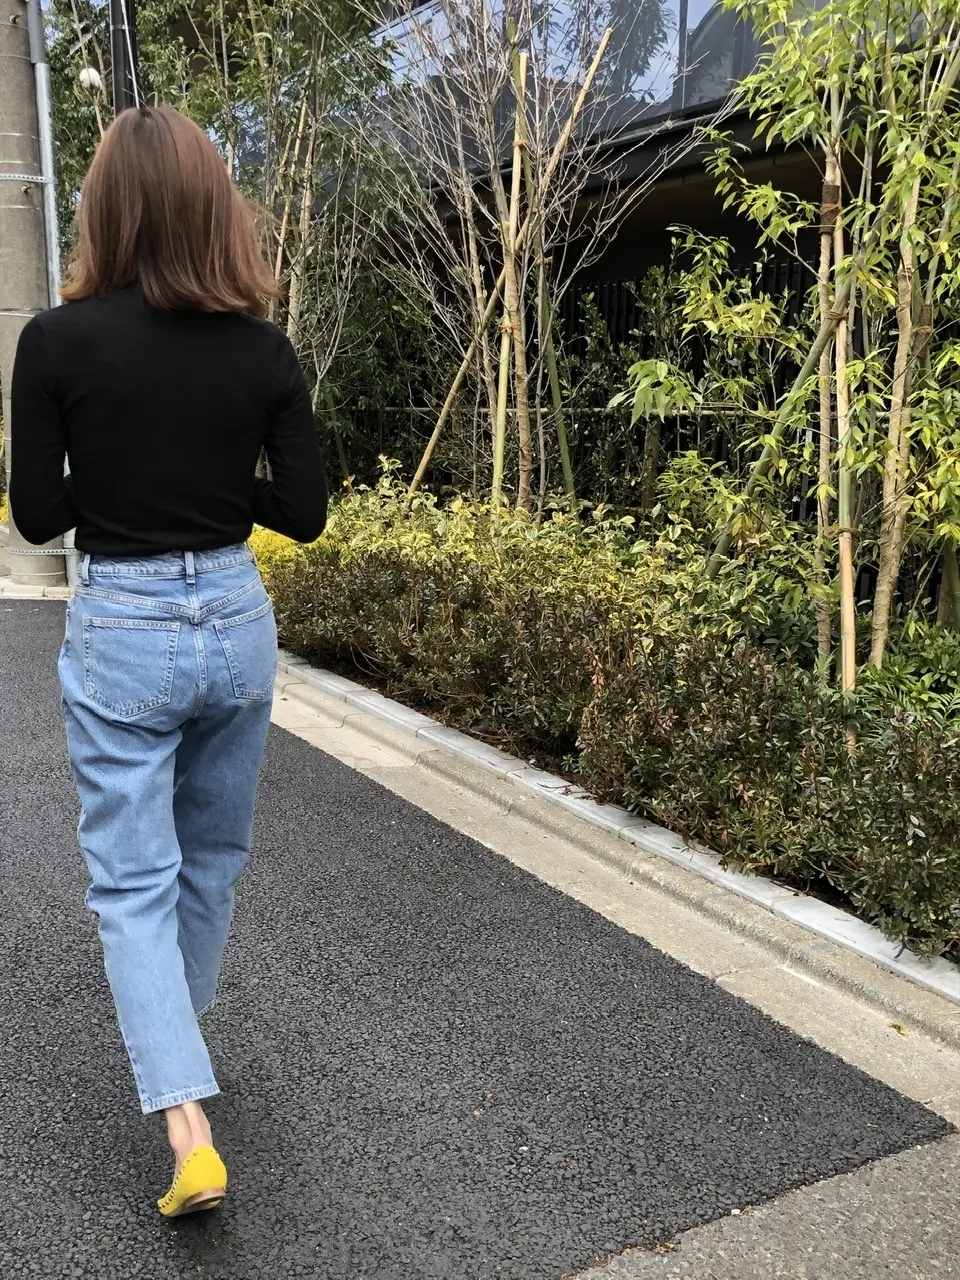 久しぶりのデニム更新は、H&M♡ | 華組 梁瀬理砂のブログ | 華組ブログ